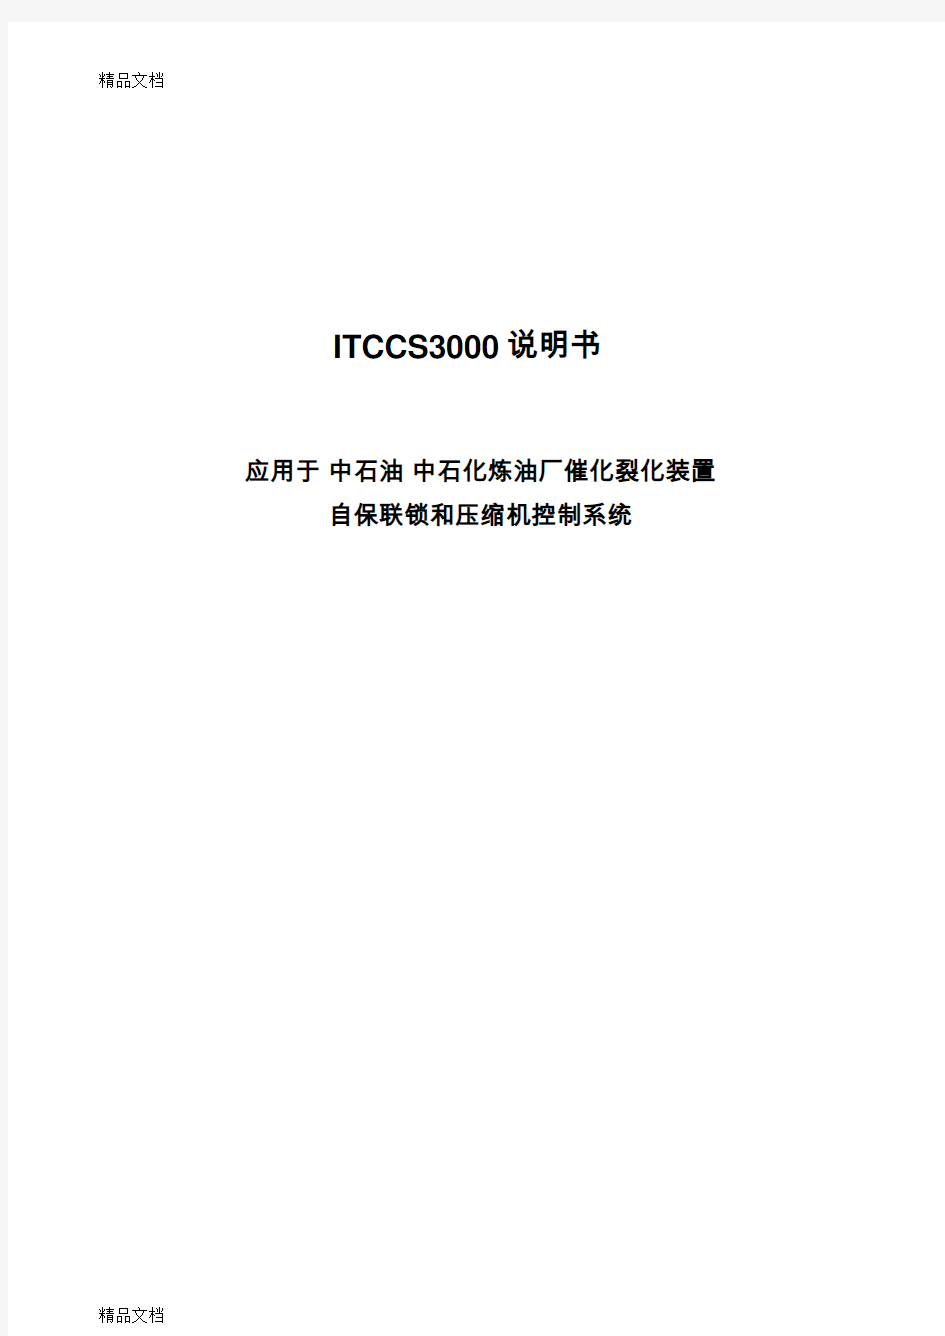 (整理)ITCCS3000说明书应用于中石油中石化炼油厂催化裂化装置自保联锁和压缩机控制系统.